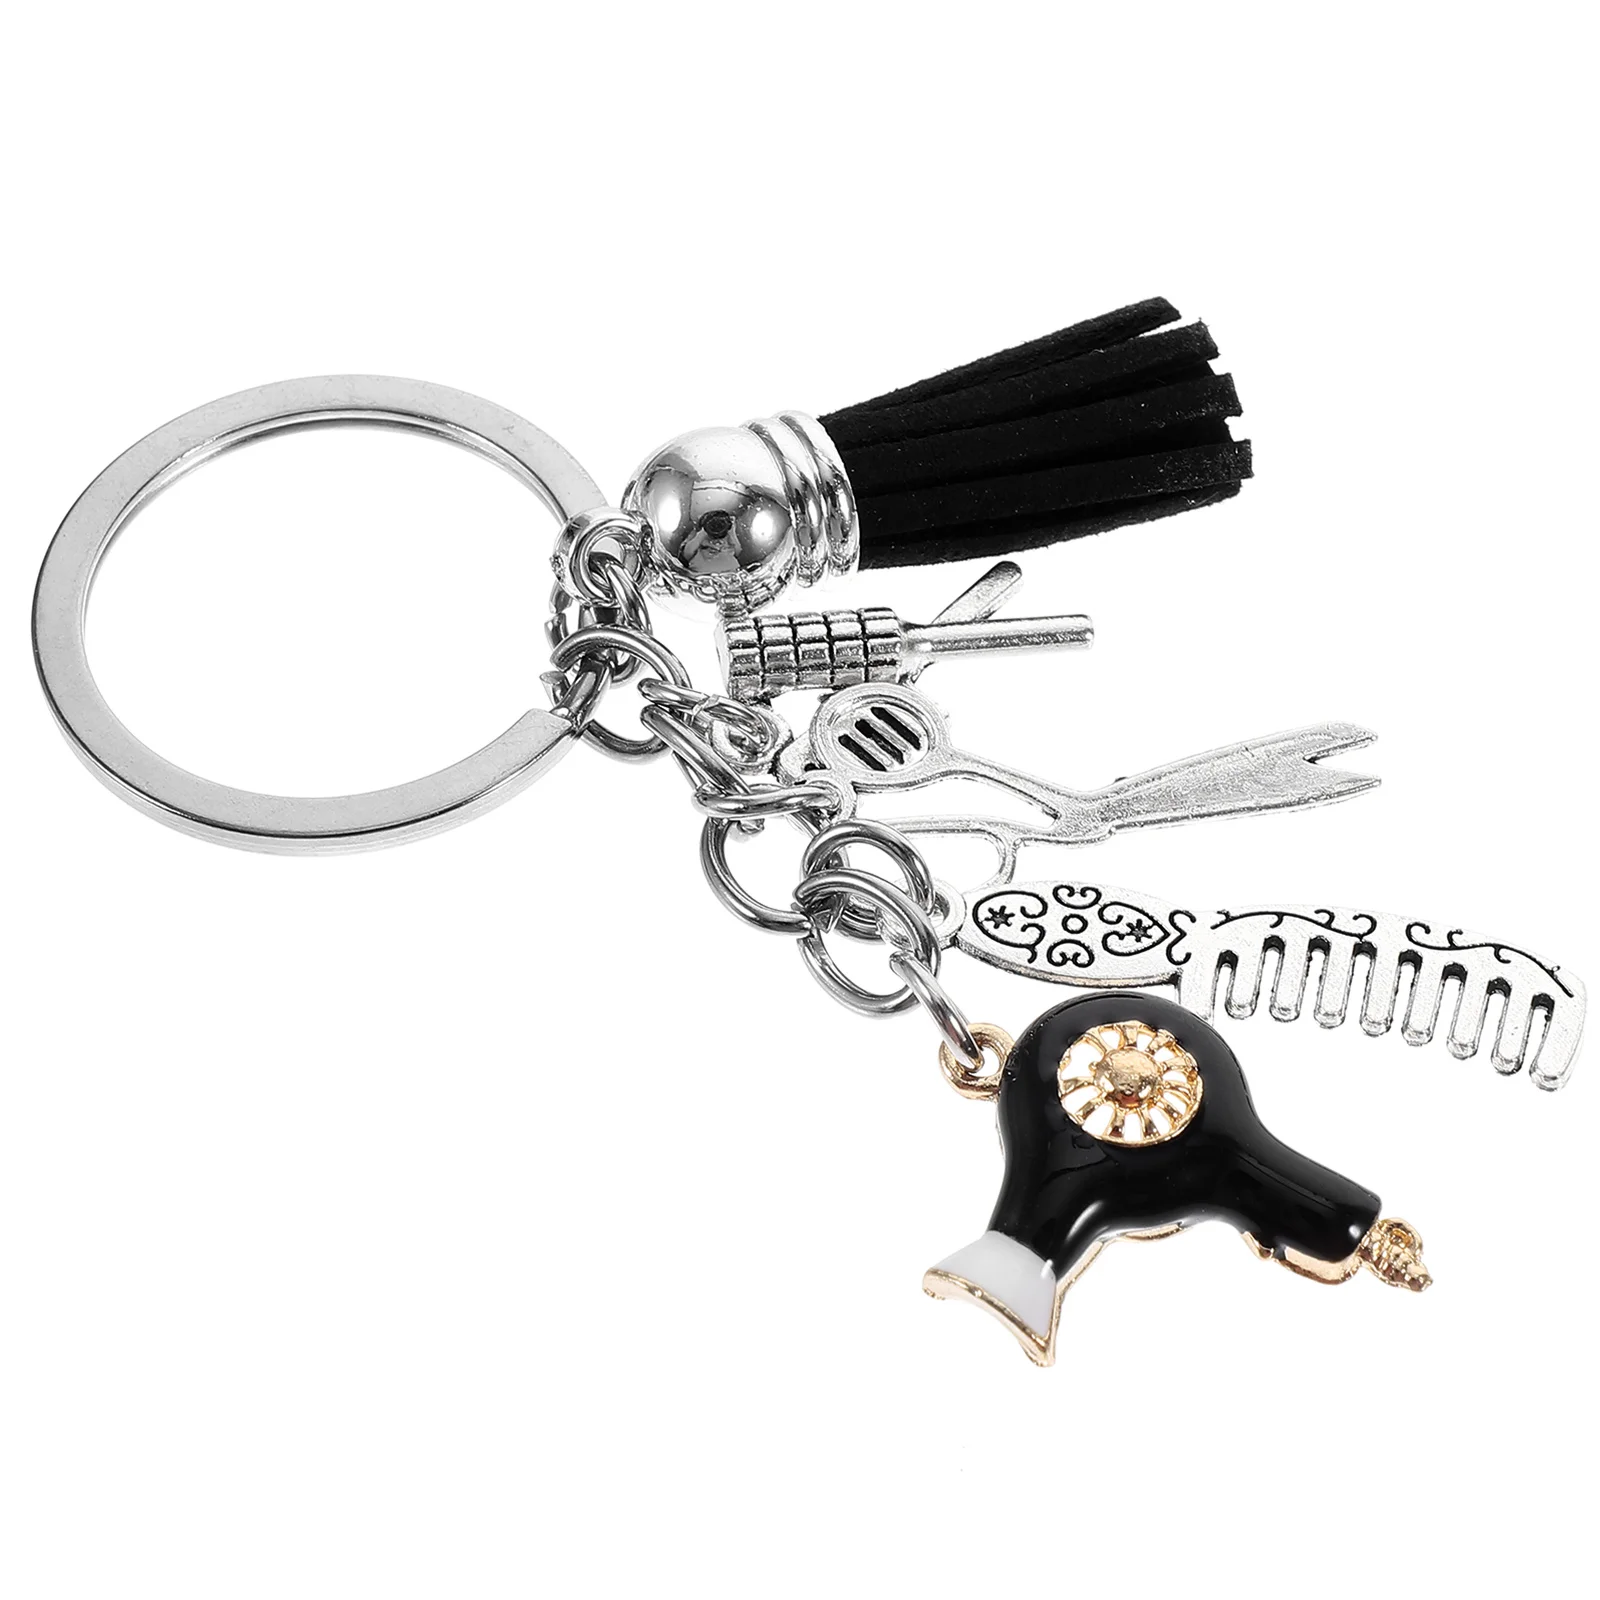 

Barber Keychain Comb Scissors Hair Dryer Hair Curler Charms Tassel Key Ring Hairdressing Key Holder Bag Backpack